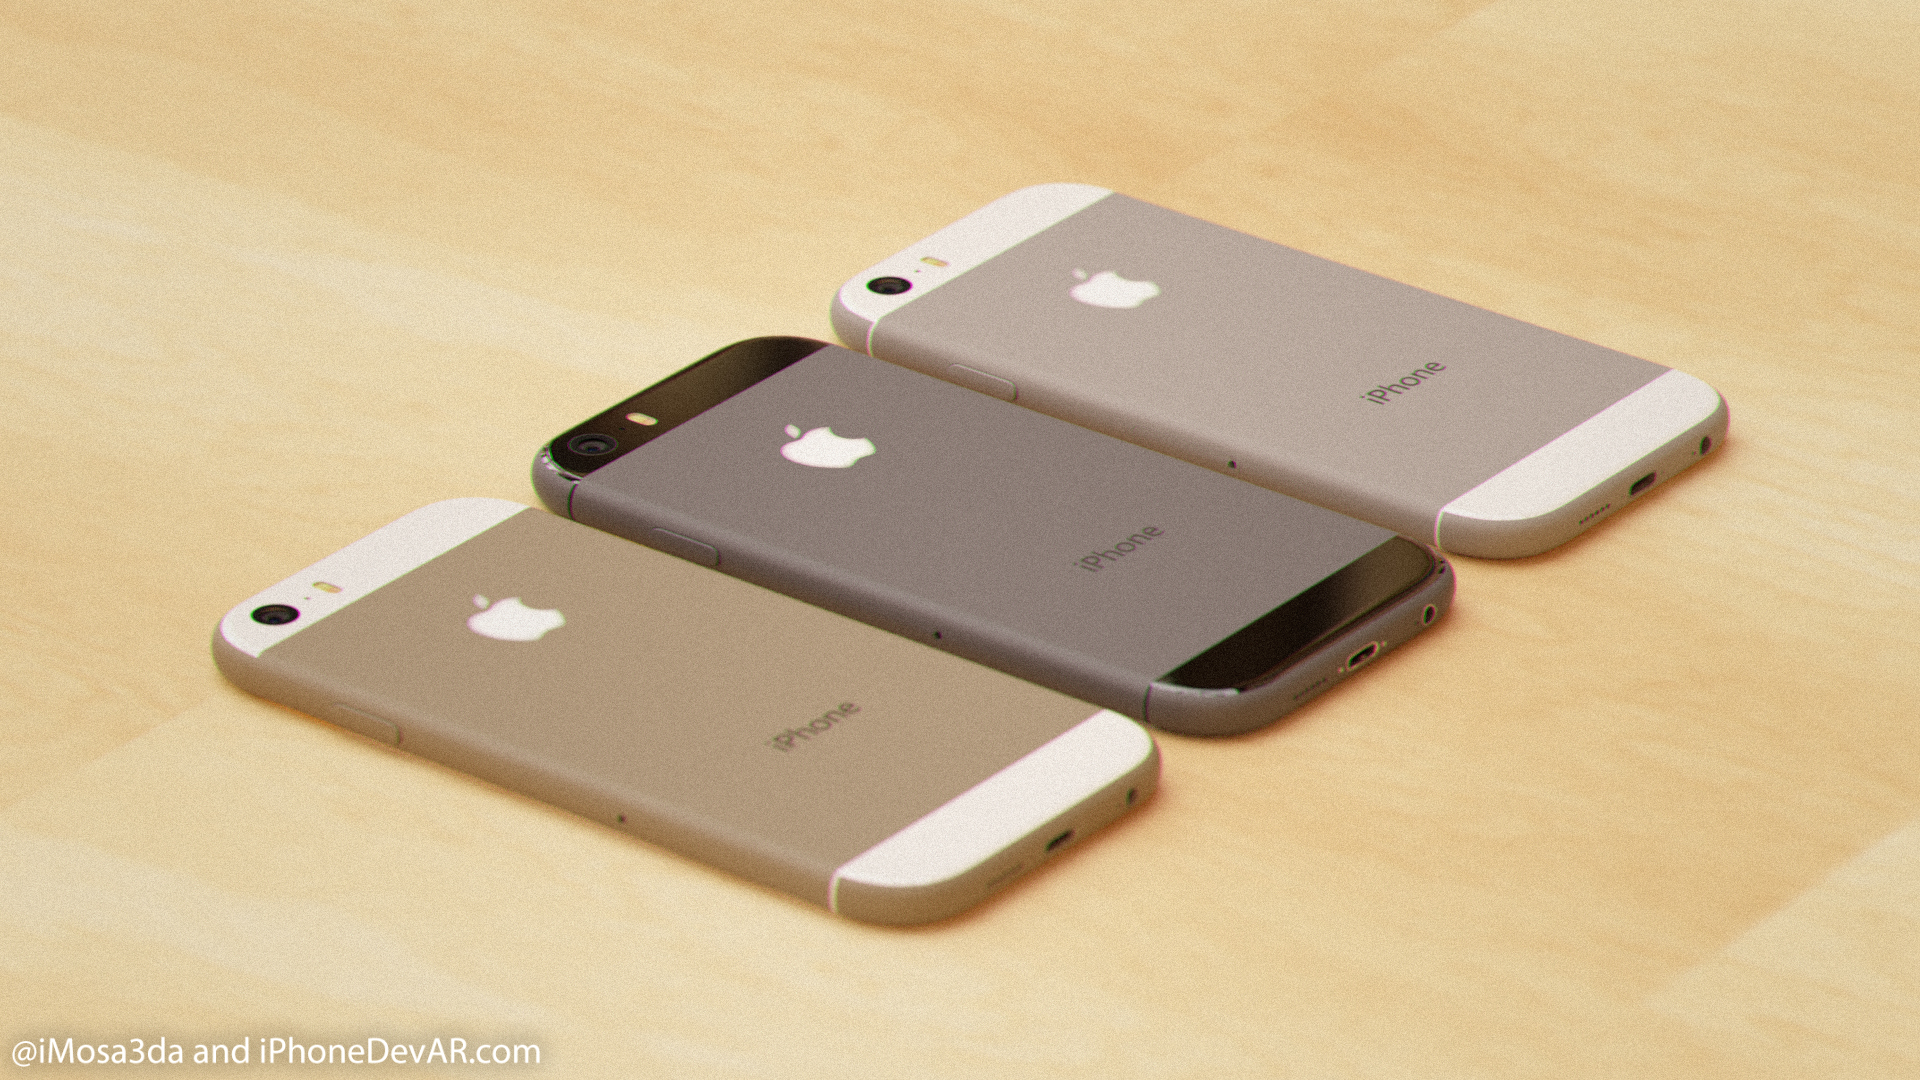 الايفون 6 بألوانه الثلاثة وشعار Apple المضيء